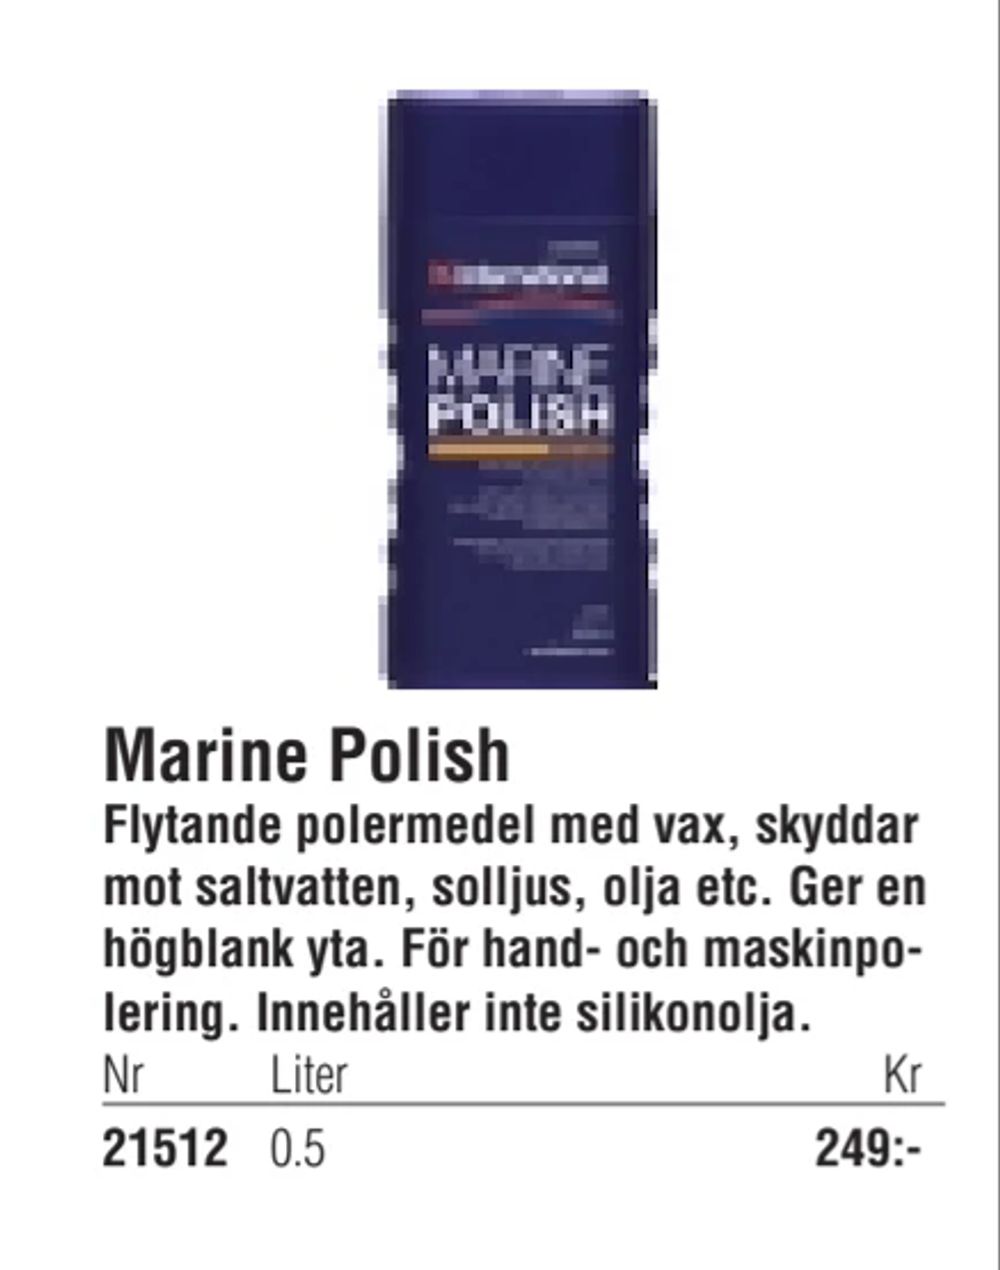 Erbjudanden på Marine Polish från Erlandsons Brygga för 249 kr